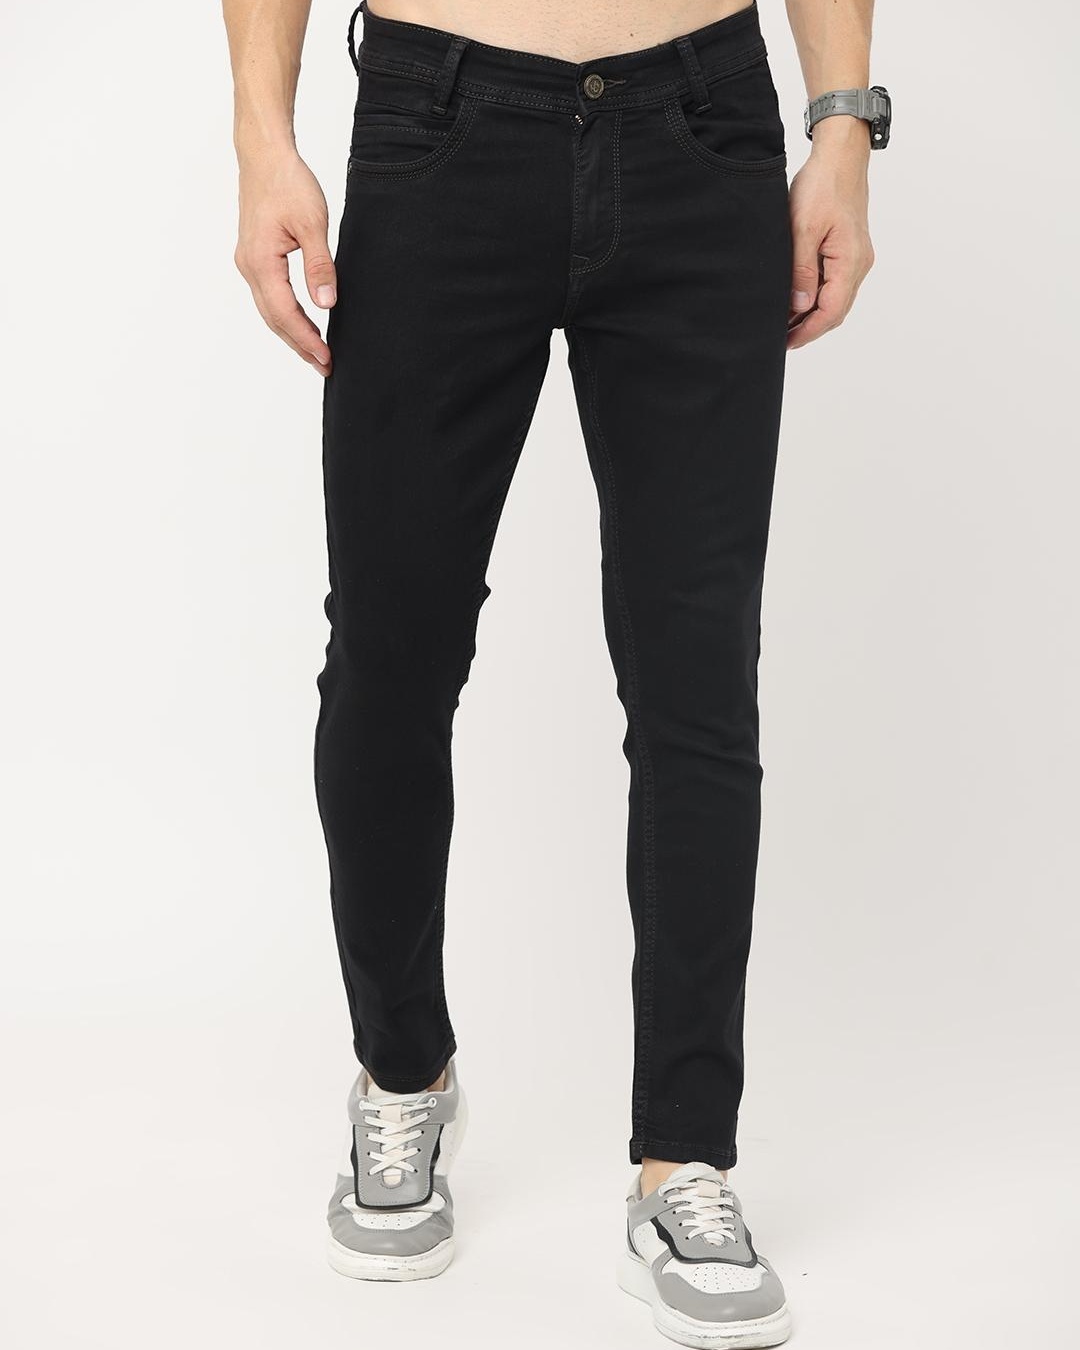 Buy Men's Black Skinny Fit Jeans Online at Bewakoof